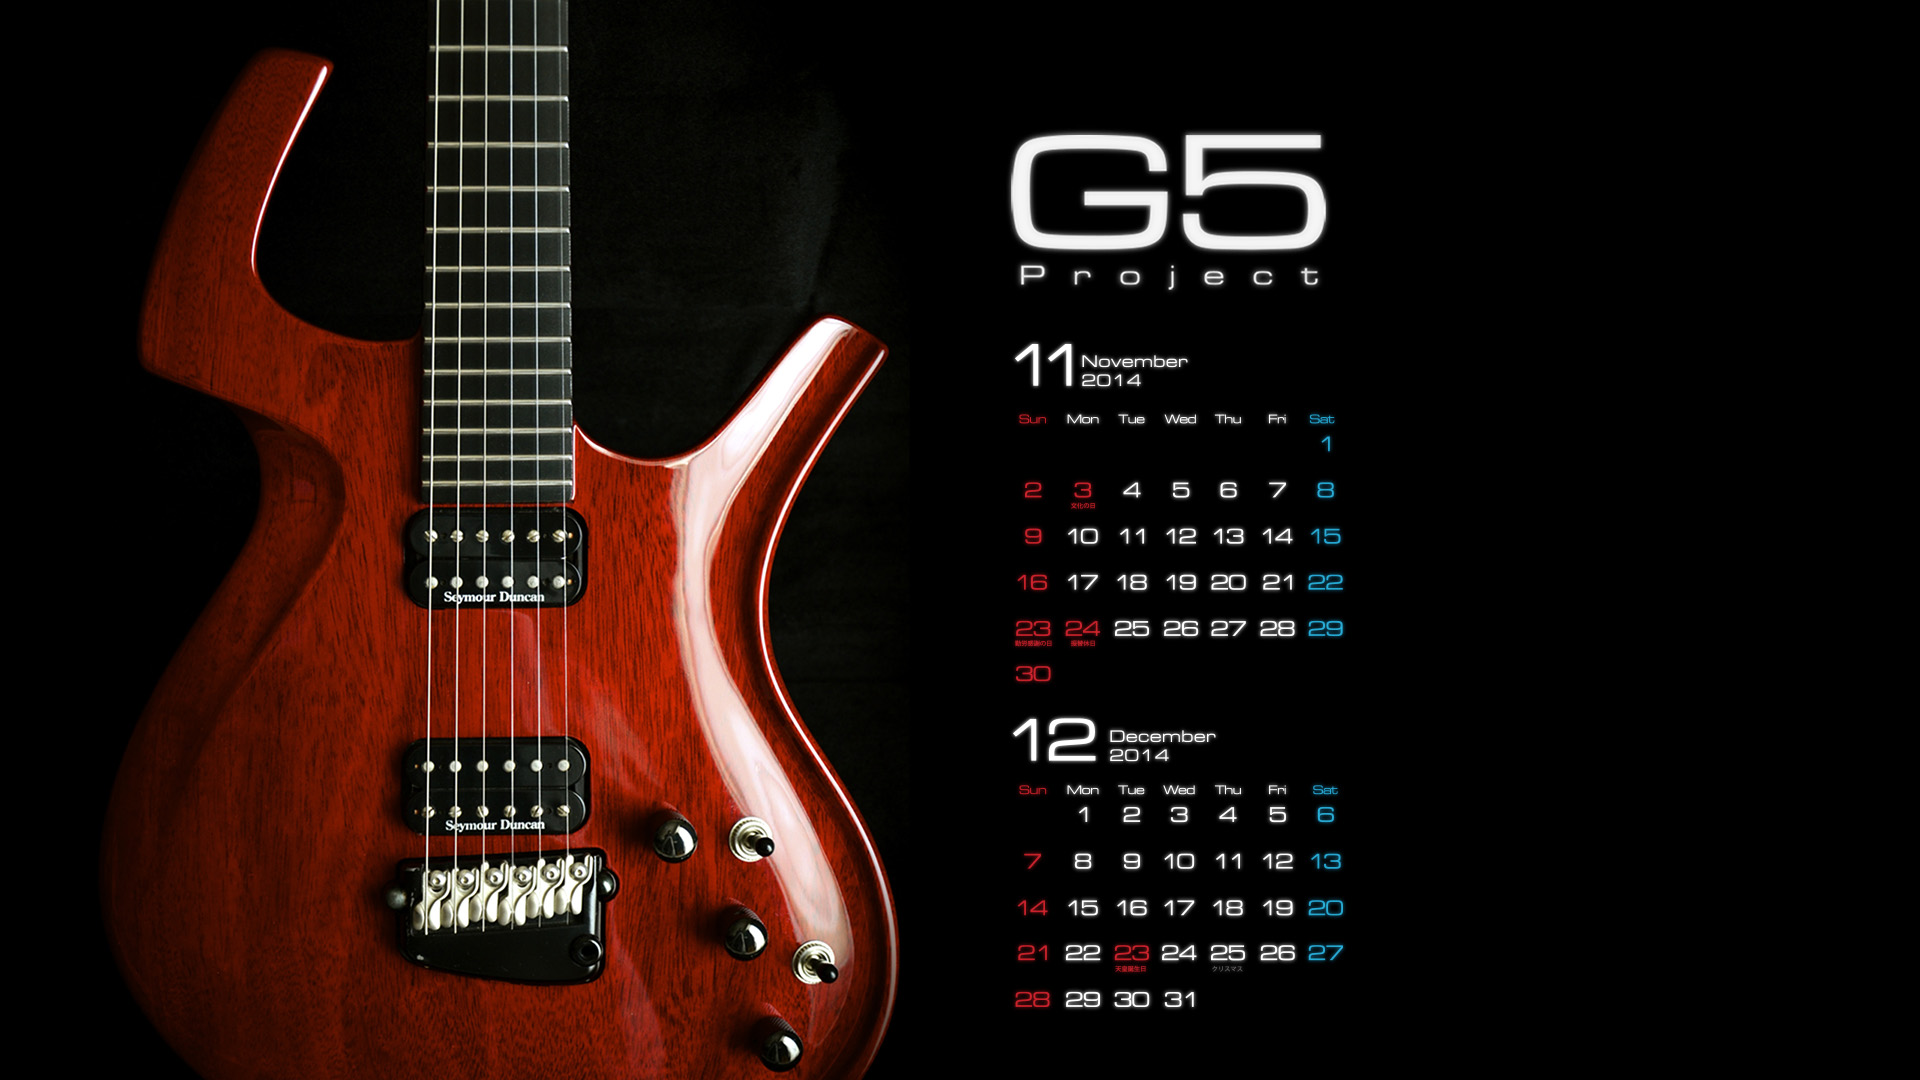 G5 14 Calendar Wallpaper G5 Project